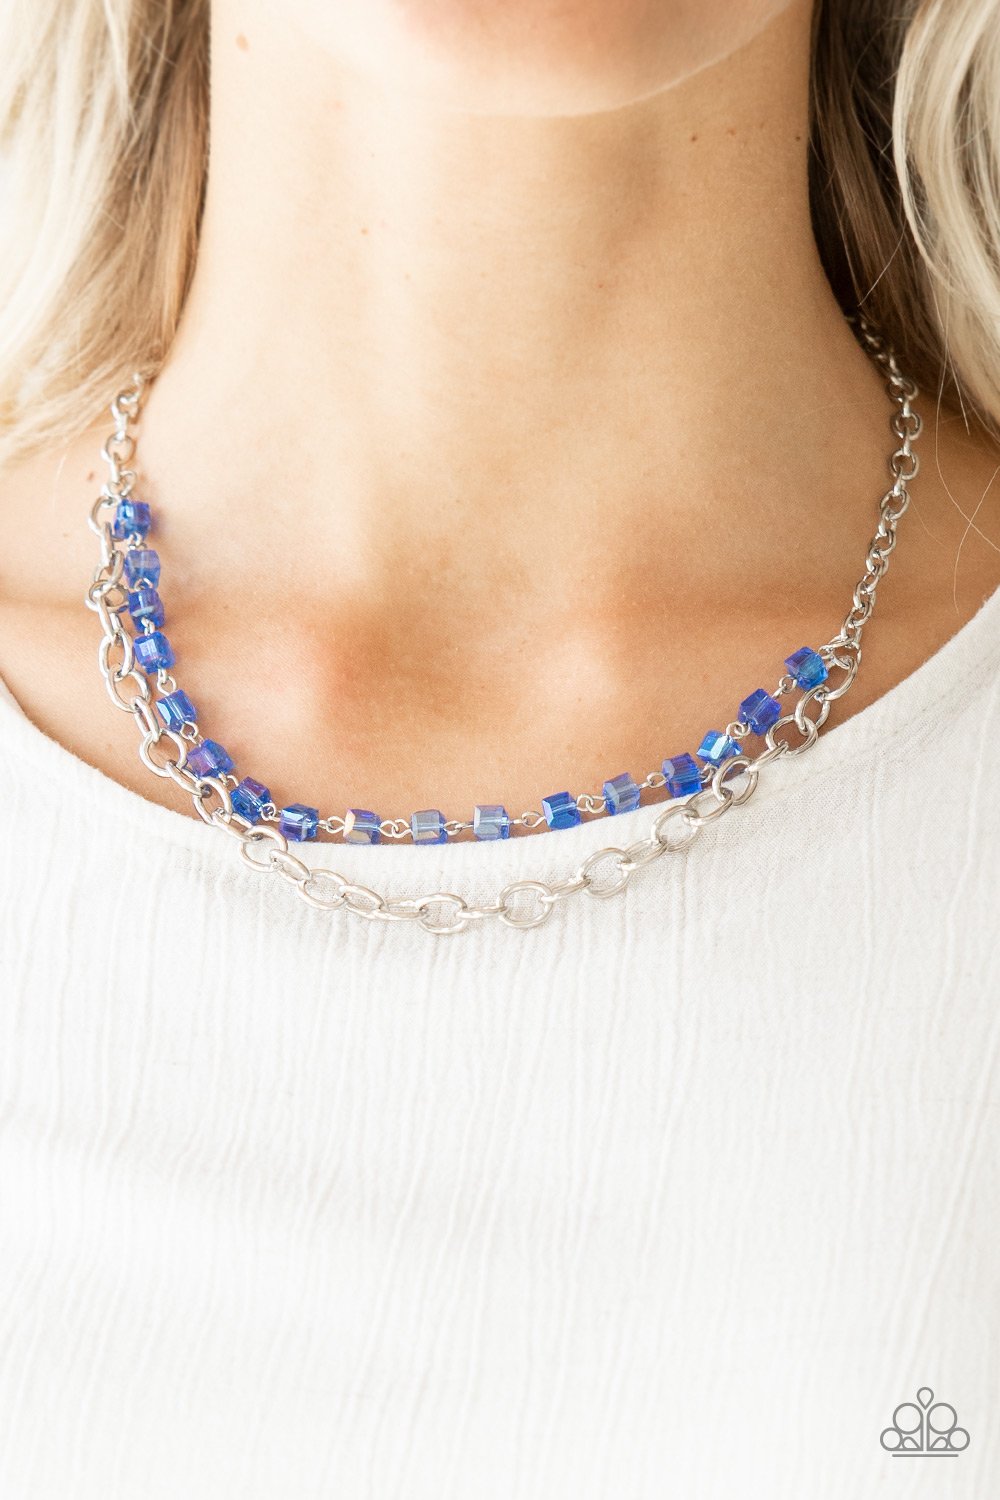 Block Party Princess - blue - Paparazzi necklace